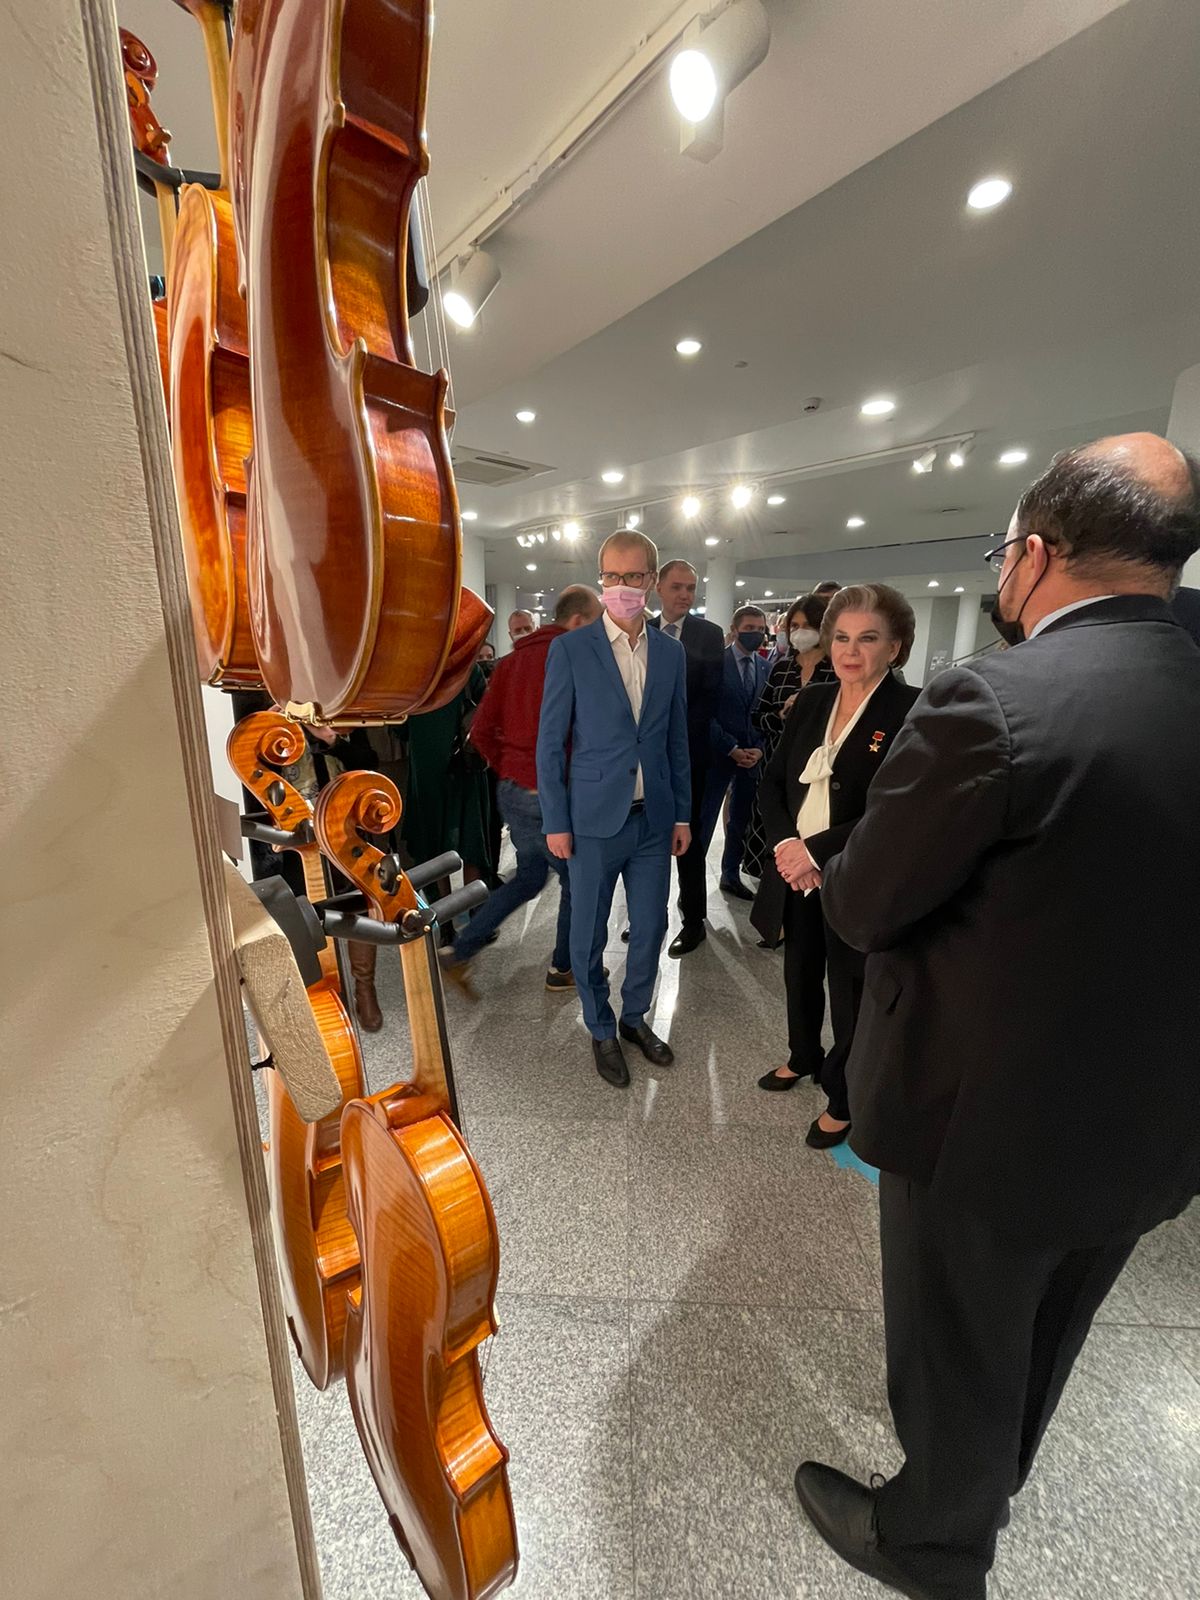 Выставка скрипок и фотовыставка на VIII международном фестивале «Коган-фест» прошла с 3 по 8 ноября